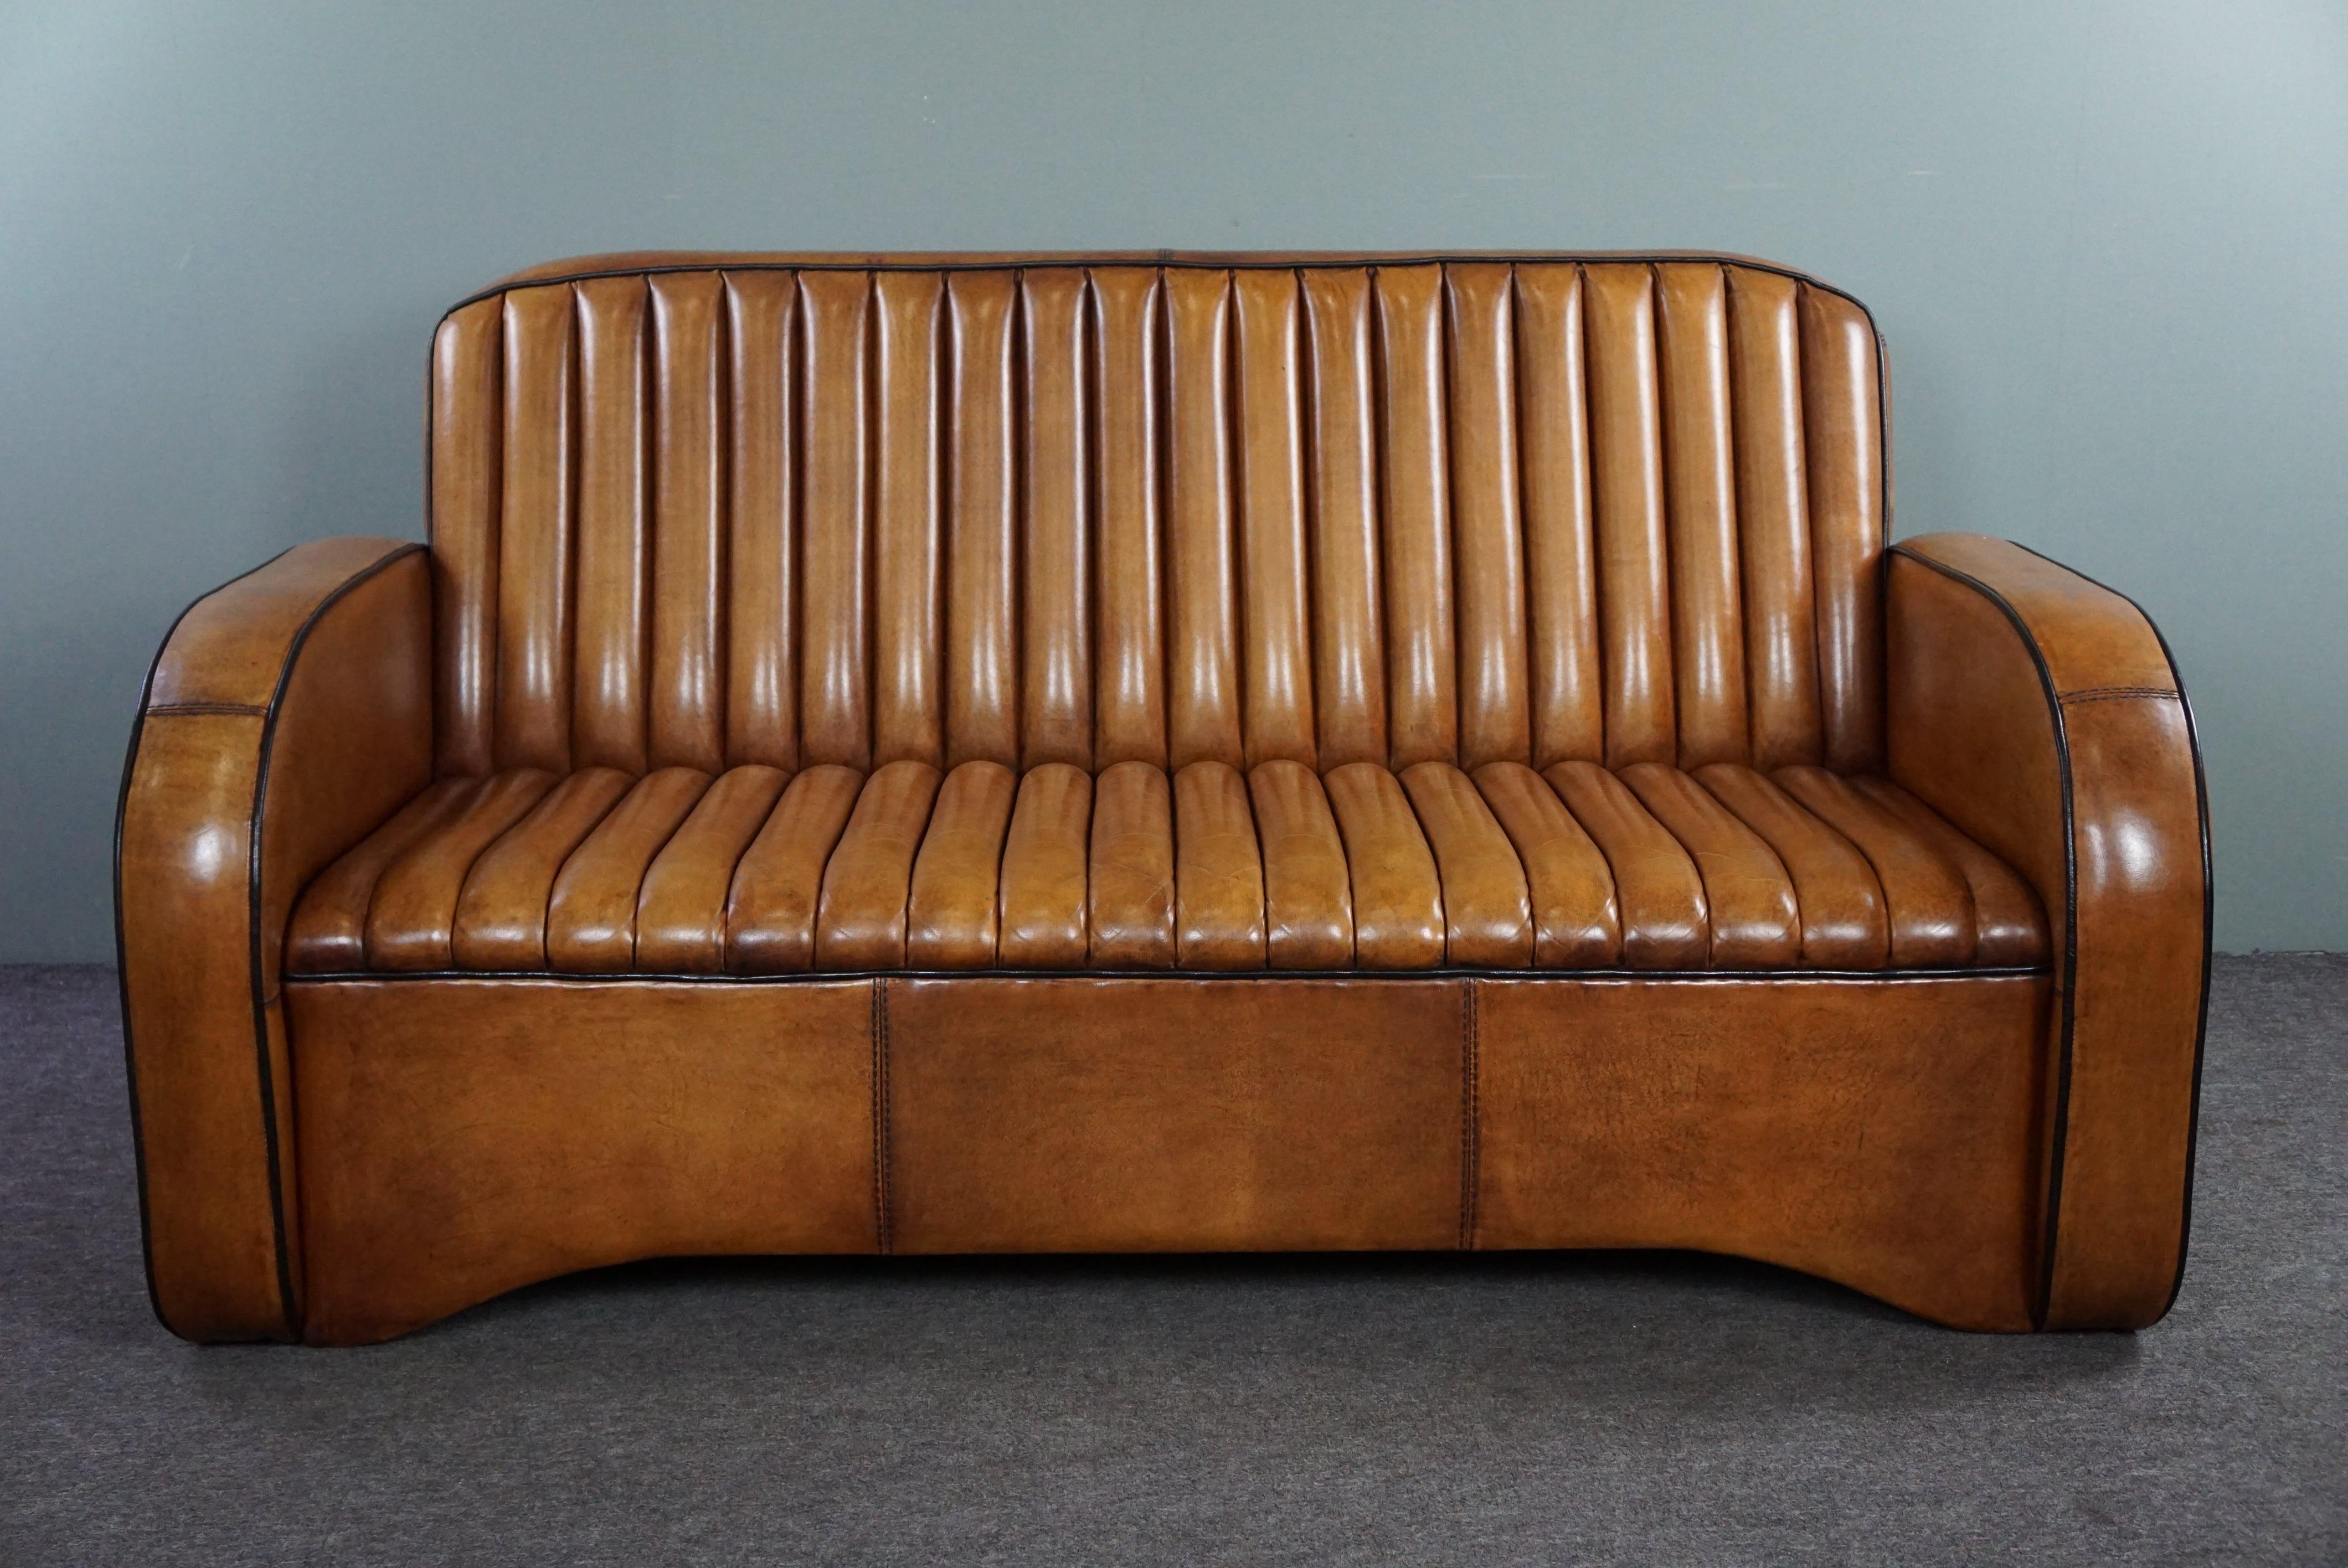 Angeboten wird dieses handpatinierte cognacfarbene Sofa aus schönem Schafsleder.

Dieses 2,5-Sitzer-Sofa ist wunderschön mit Schafsleder gepolstert und von Hand in einem warmen Cognac-Ton patiniert. Das Sofa ist mit schwarzen Paspeln an den Rändern